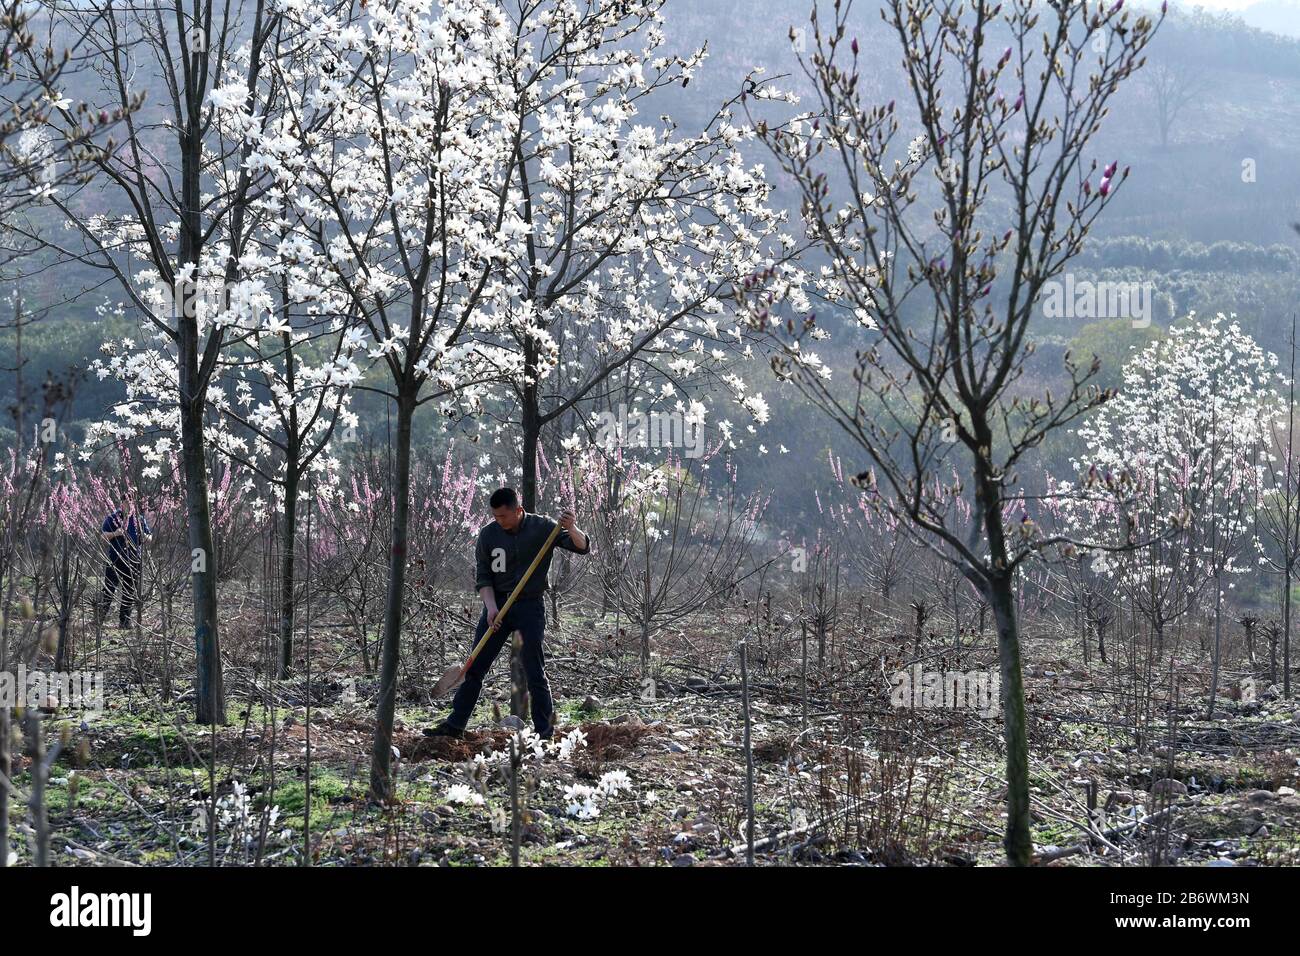 (200312) -- HEFEI, 12. März 2020 (Xinhua) -- Zhou Genmiao arbeitet am 11. März 2020 an einer Pflanzenbasis im Dorf Luoba im Landkreis Feixi, in der ostchinesischen Provinz Anhui. Zhou Xianbing, ein Dorfbewohner mit mehr als 20 Jahren Erfahrung in der Baumbepflanzung, baute eine Kooperative für den Anbau von Blumenbepflanzung und begann 2008, Bäume auf einem 500 me (ca. 33,3 Hektar) großen Land in einem kargen Berg im Dorf Luoba im Landkreis Feixi zu Pflanzen. Nach den 90er Jahren kehrte Zhou Genmiao, Sohn von Zhou Xianbing, in seine Heimatstadt zurück und schloss sich 2012 mit seinen weiteren Pflanzen von Bäumen an der Anbaufläche von Setzling an. Wie der Zh Stockfoto